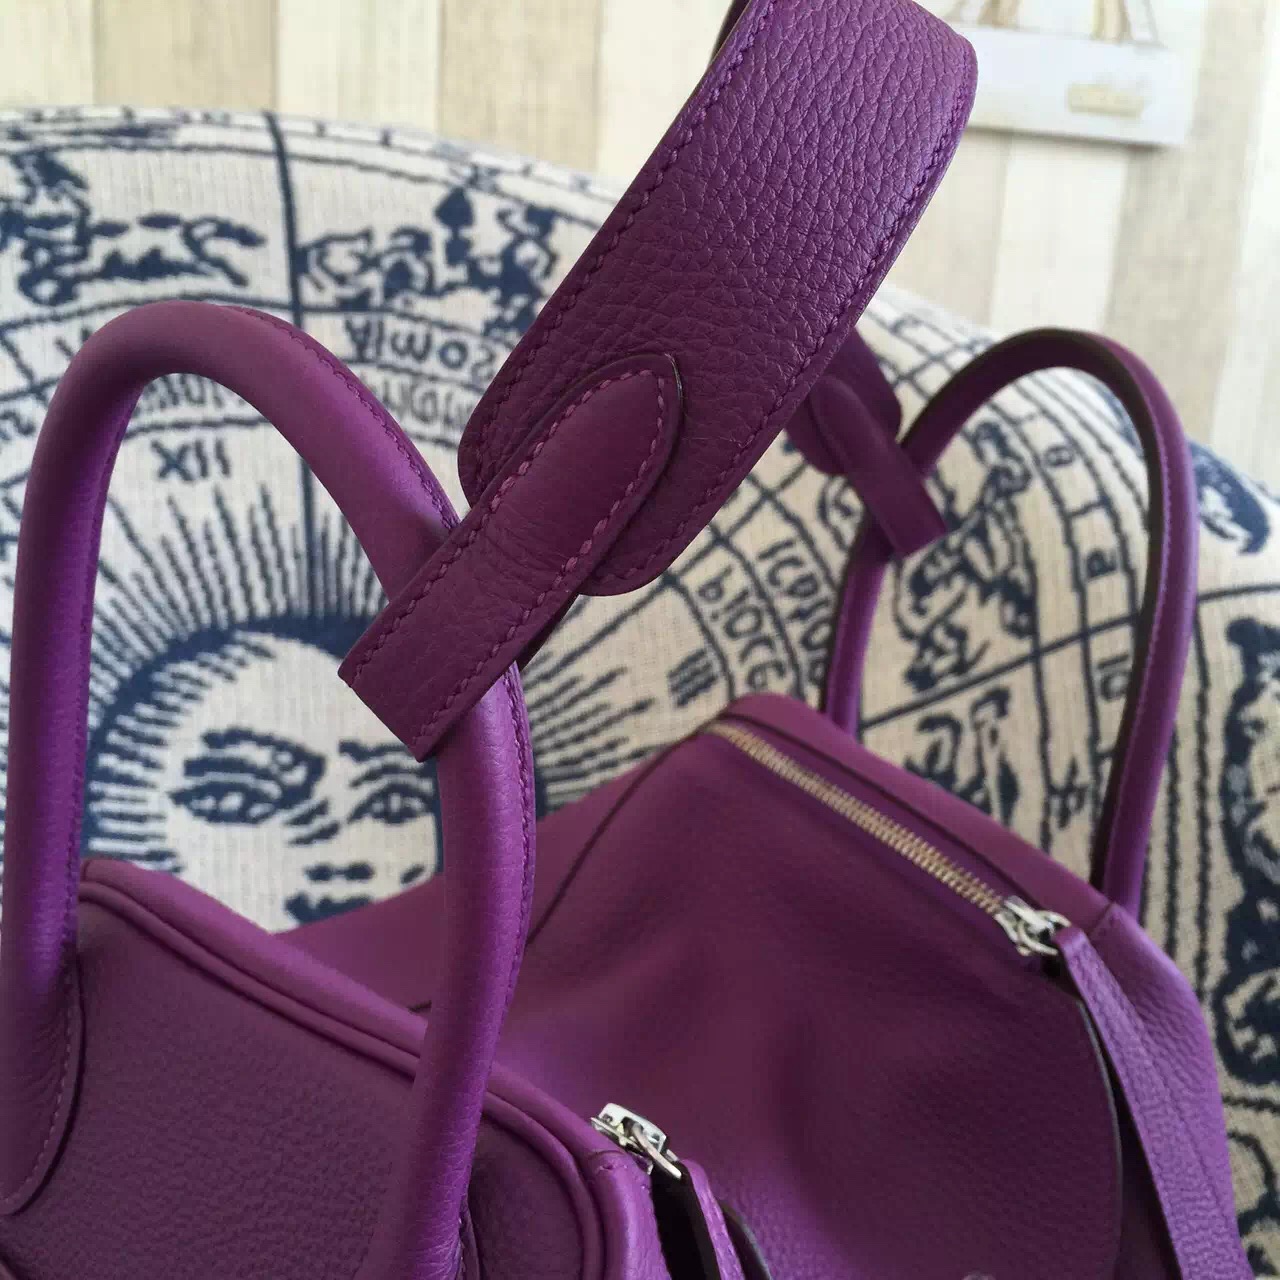 New Hermes Bag P9 Anemone Purple Original Togo Calfskin Lindy Bag30cm